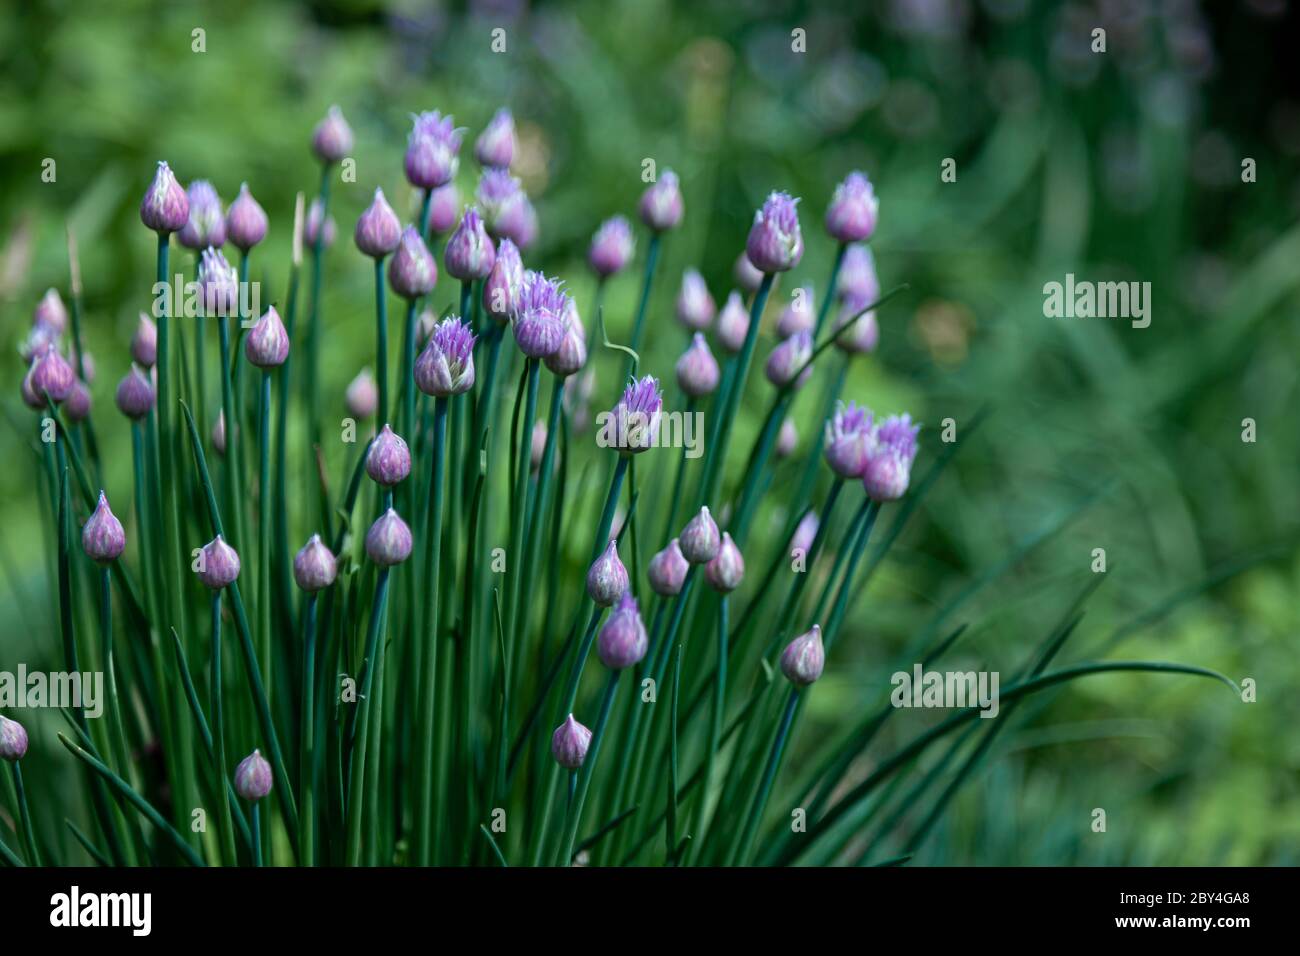 Fleurs violettes dans le jardin. L'oignon, ou ciboulette, est une plante herbacée vivace dont le nom latin est Allium schoenoprasum. Banque D'Images